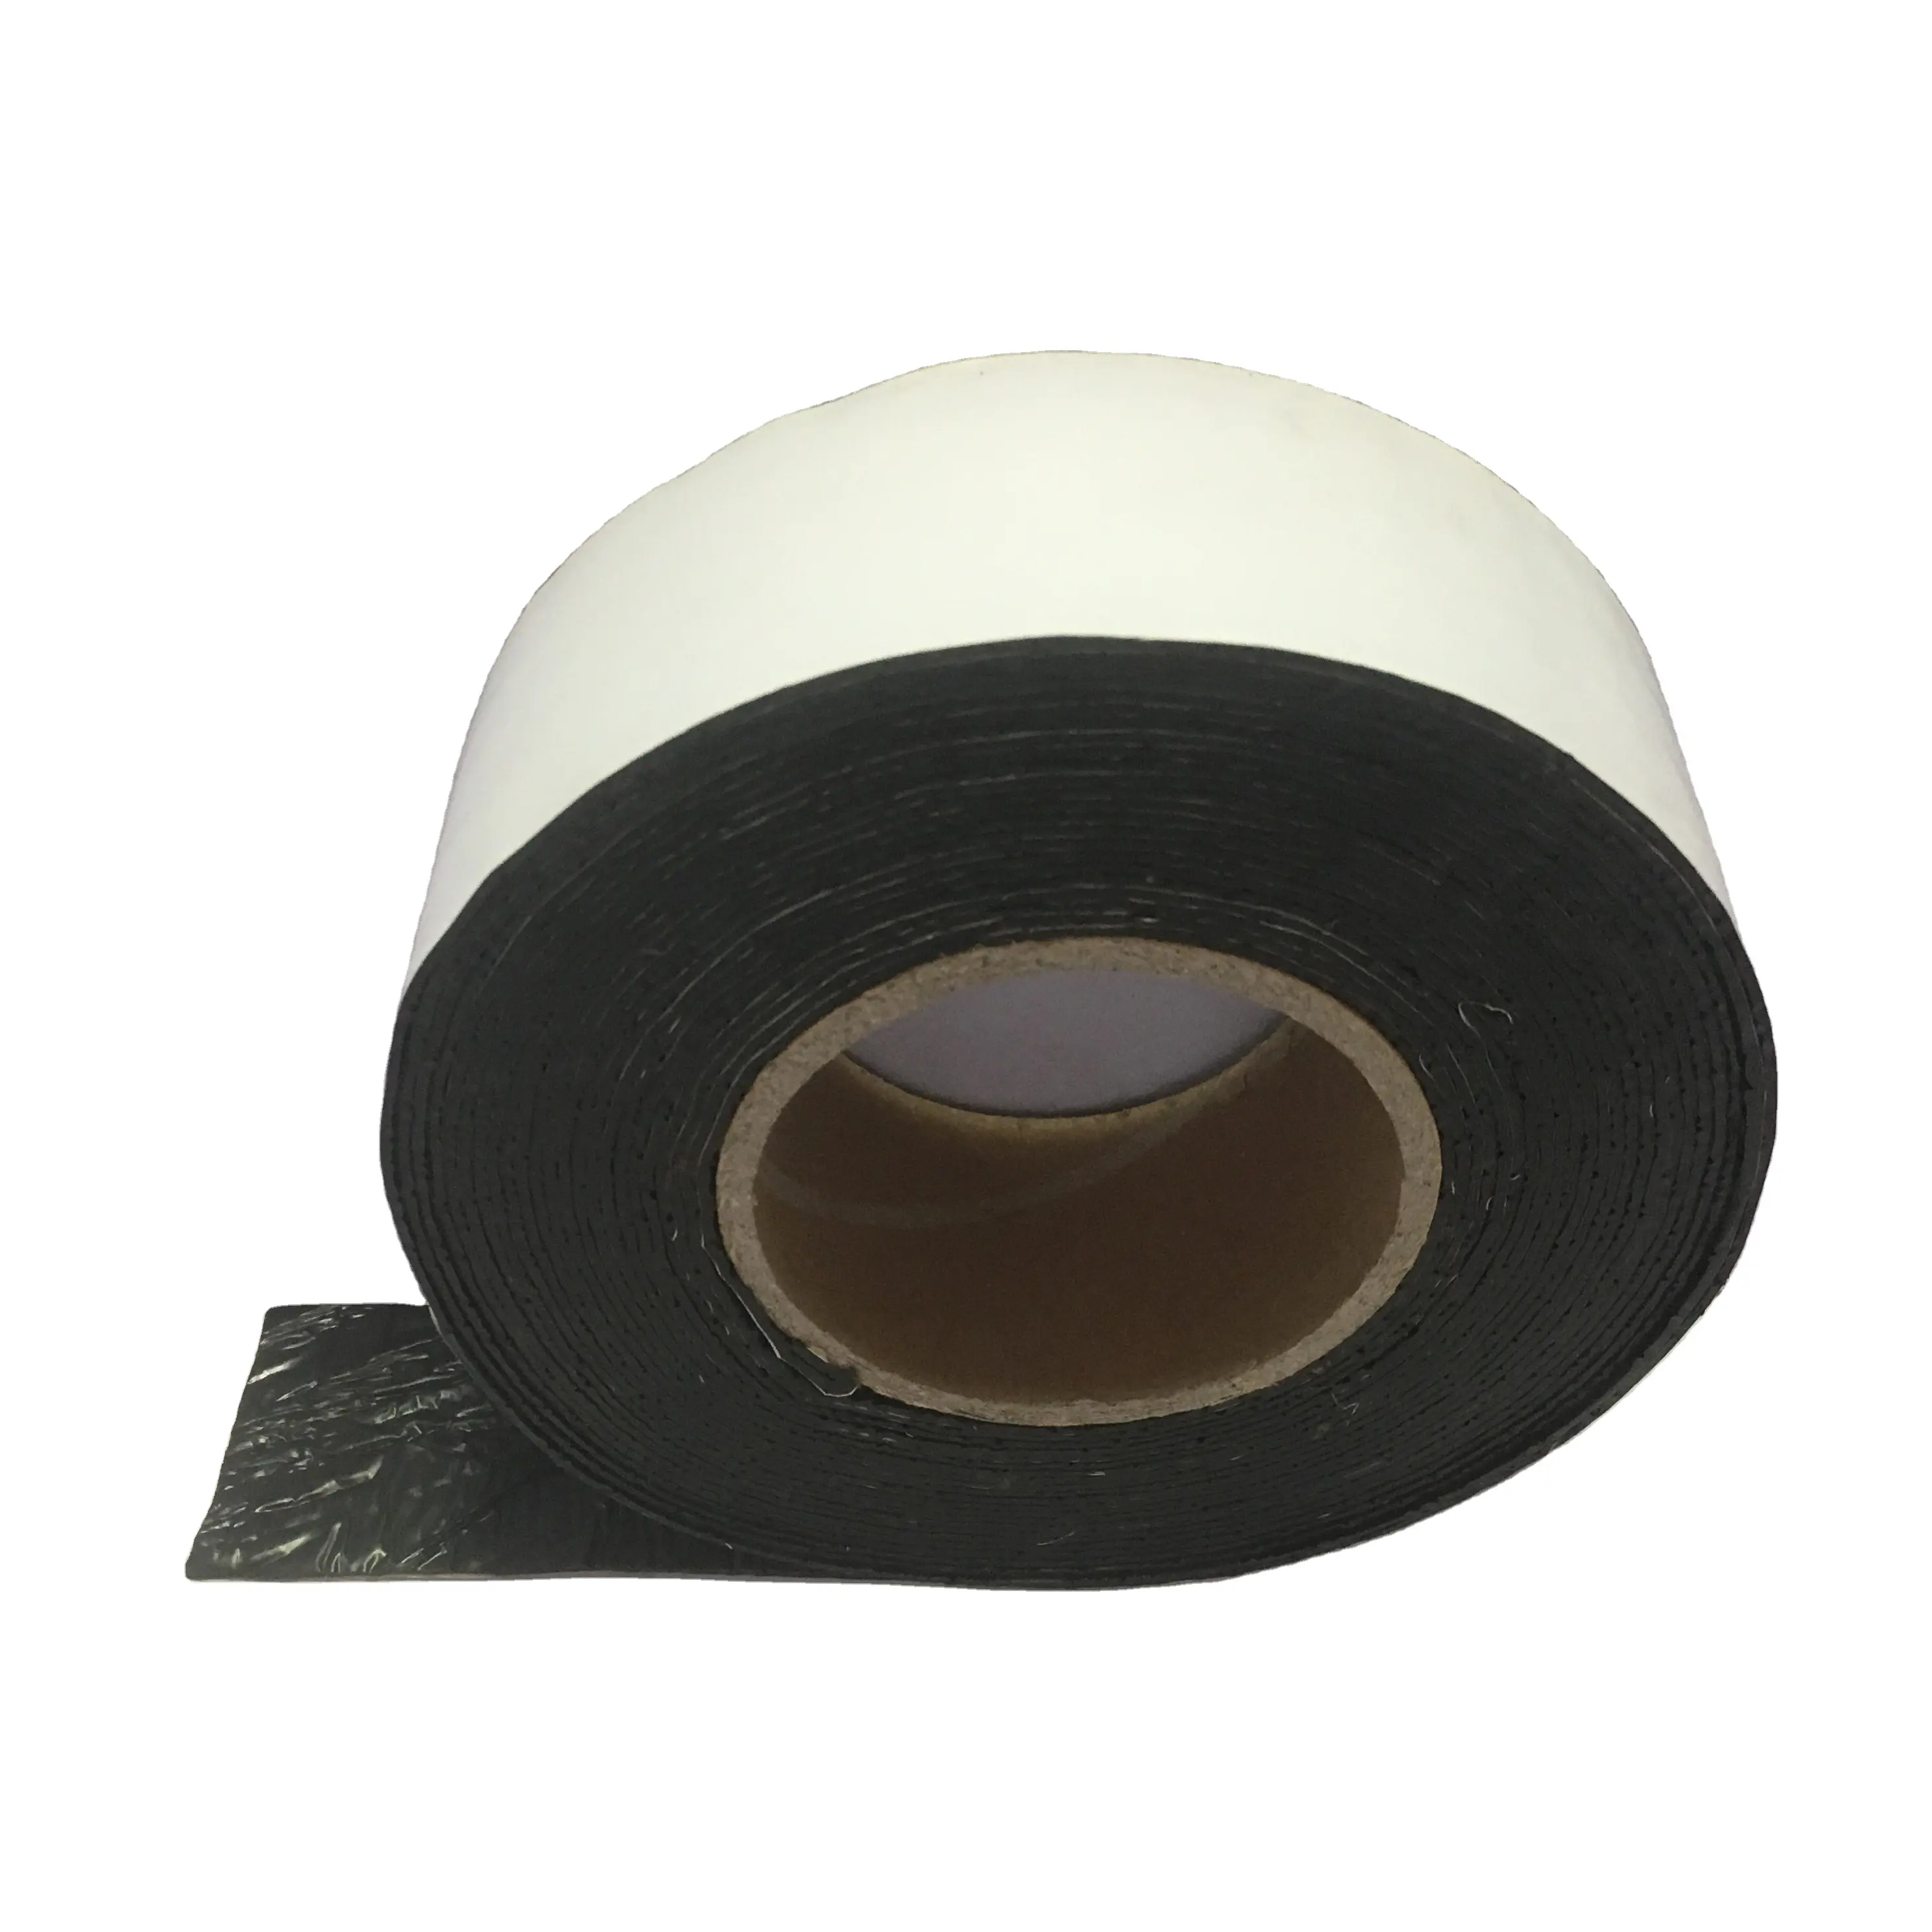 Nuovo prodotto vendita calda manifattura limin nastro per giunti nastro per copertura per boccaporto pellicola bianca membrana in HDPE nastro sigillante per strada riparata